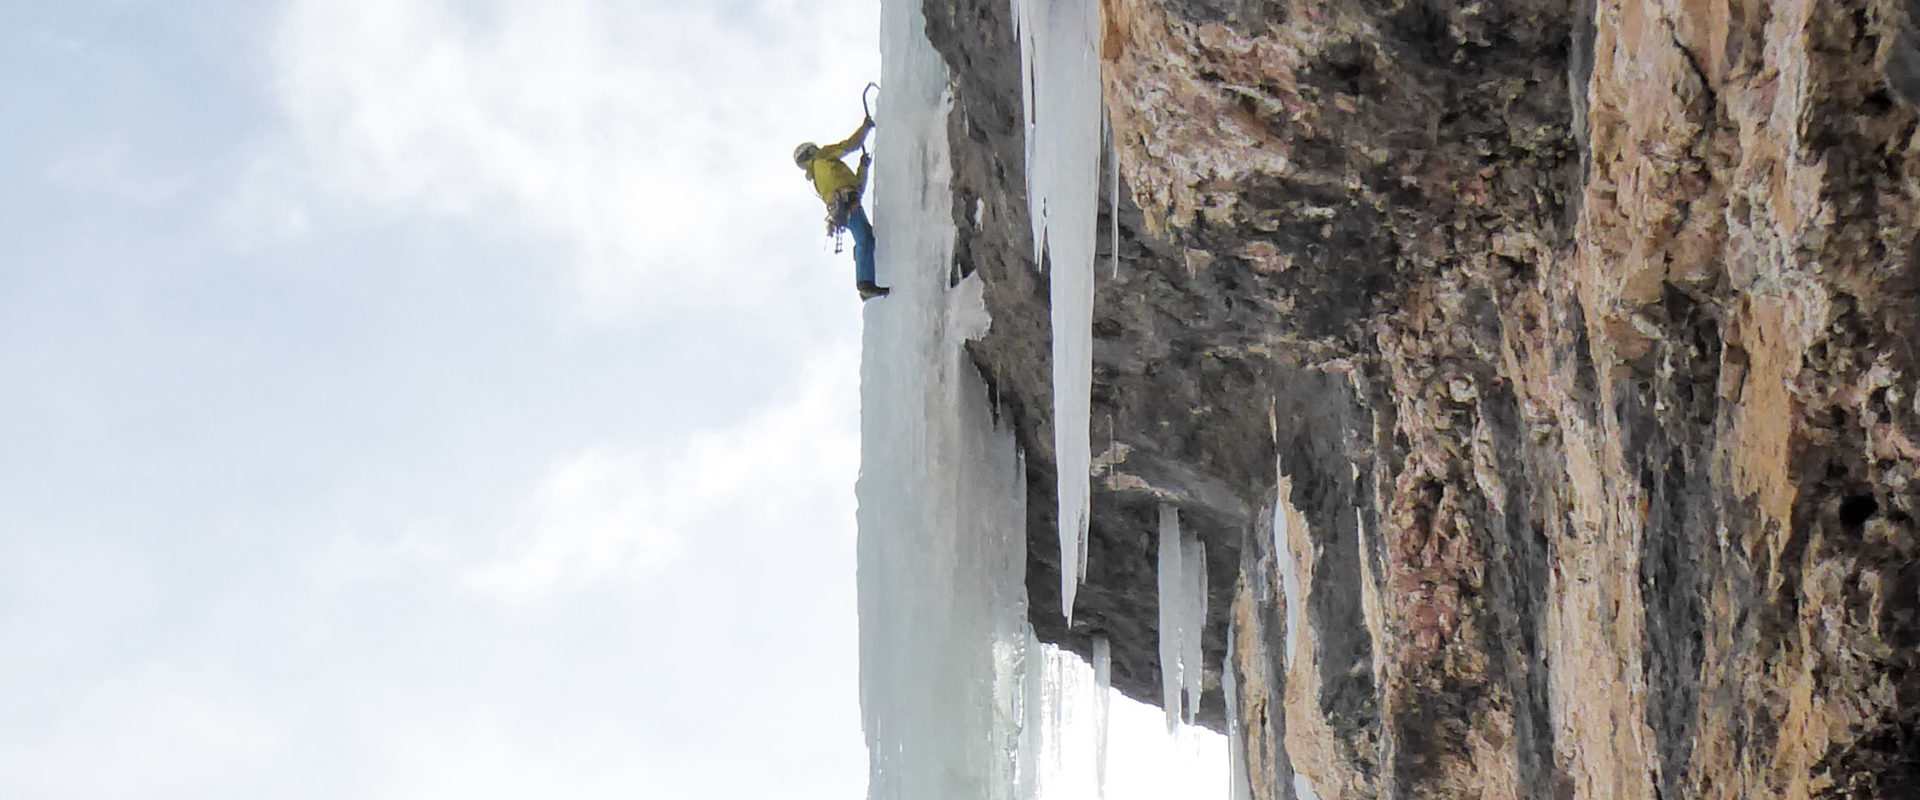 Eiskletterer in der Zauberflöte mit Bergführer klettern.